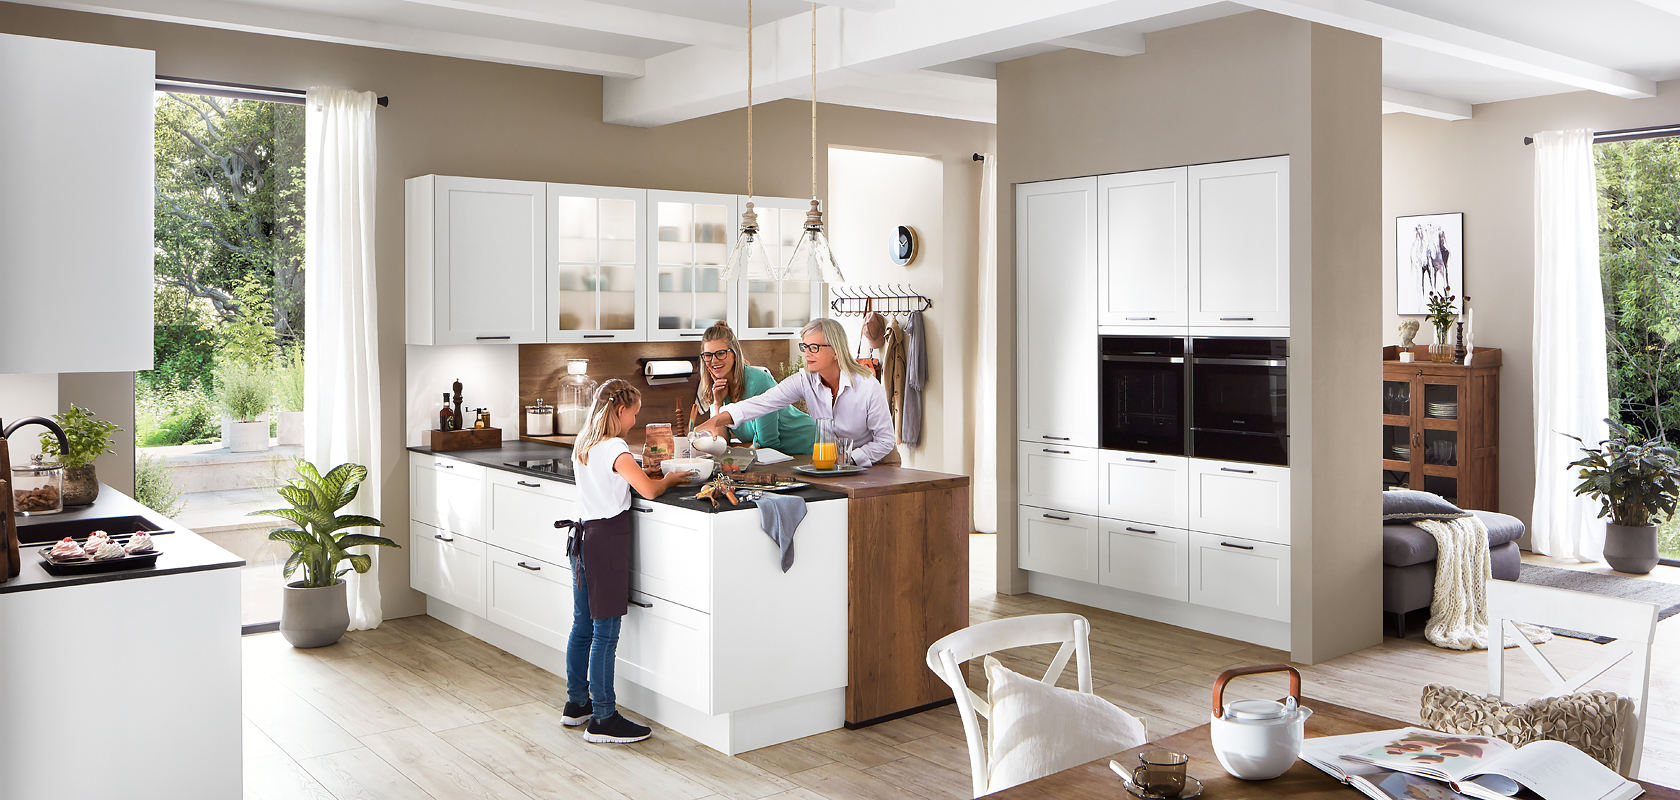 Een moderne keuken gevuld met natuurlijk licht waar een familie samen tijd doorbrengt, met strakke witte kasten en roestvrijstalen apparaten.